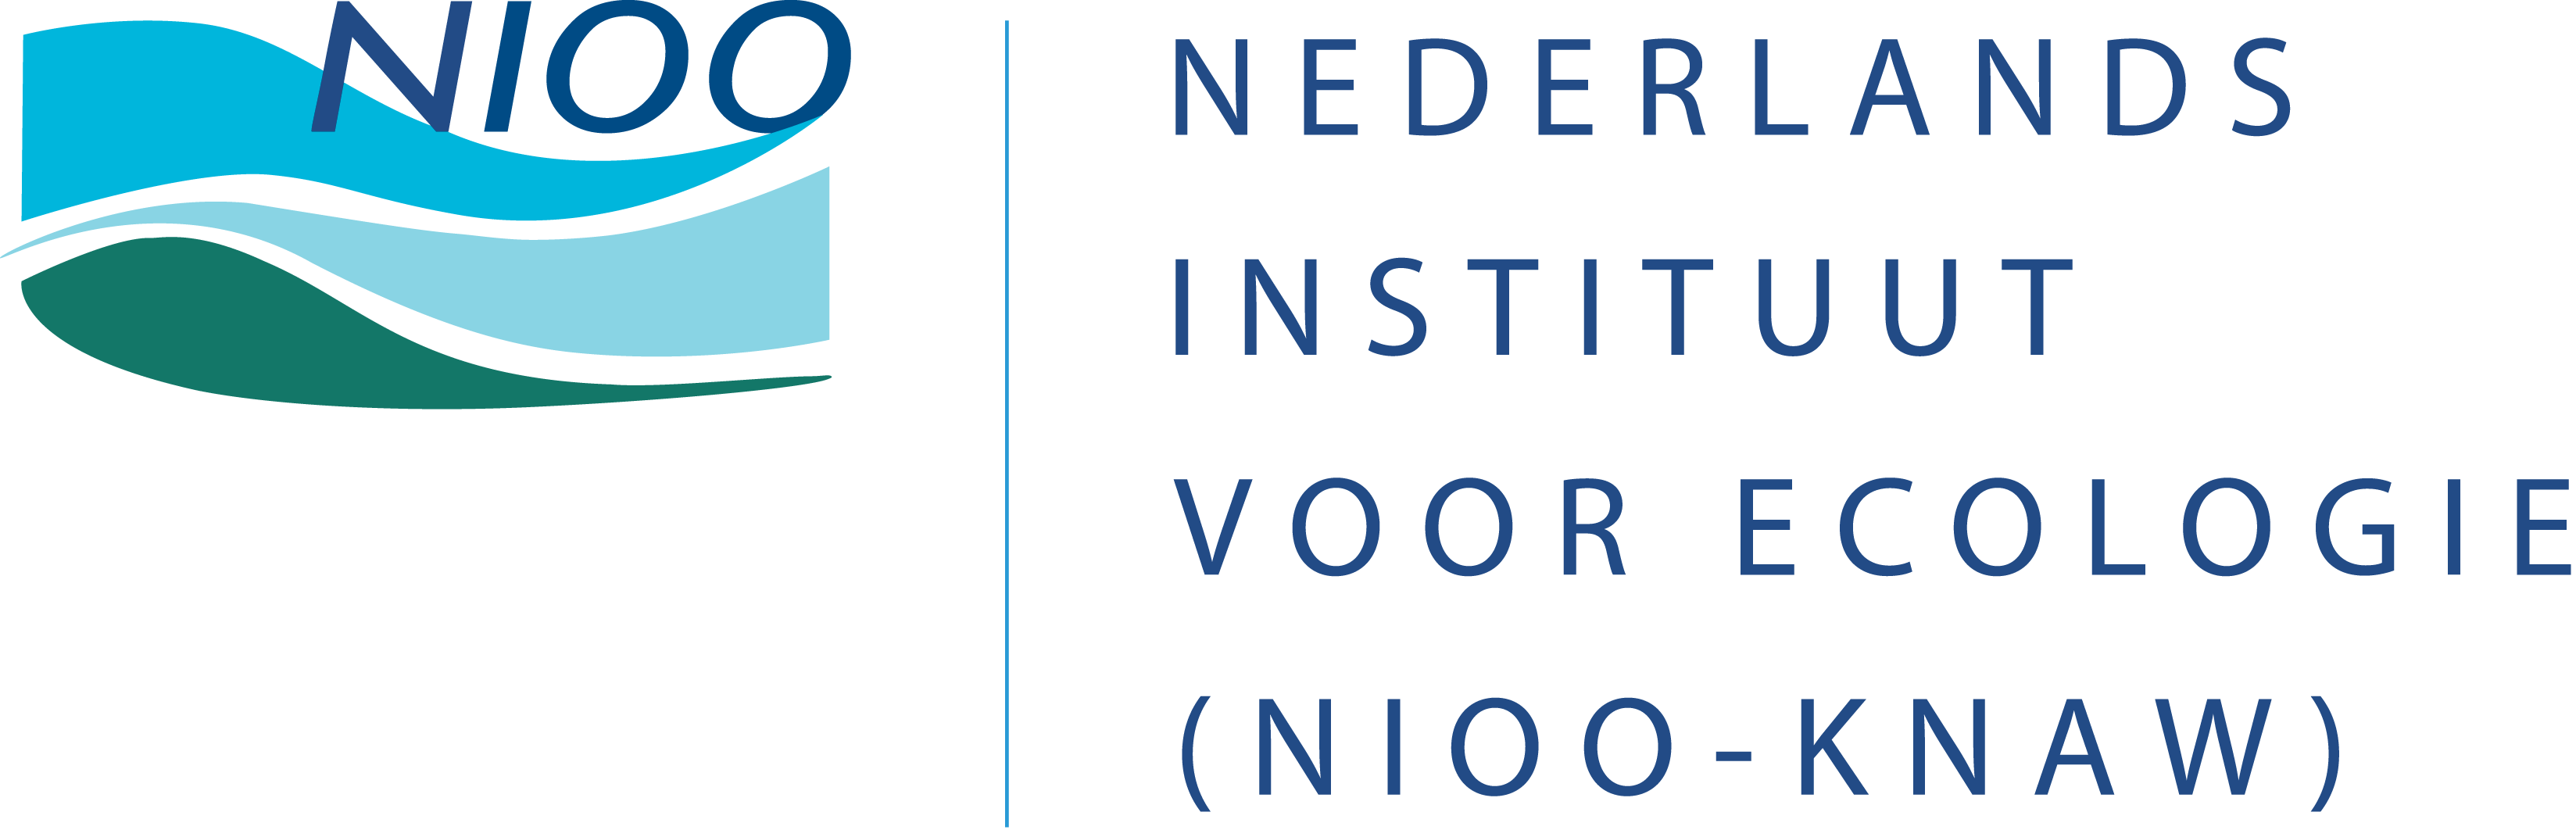 Nederlands Instituut voor Ecologie (NIOO-KNAW)